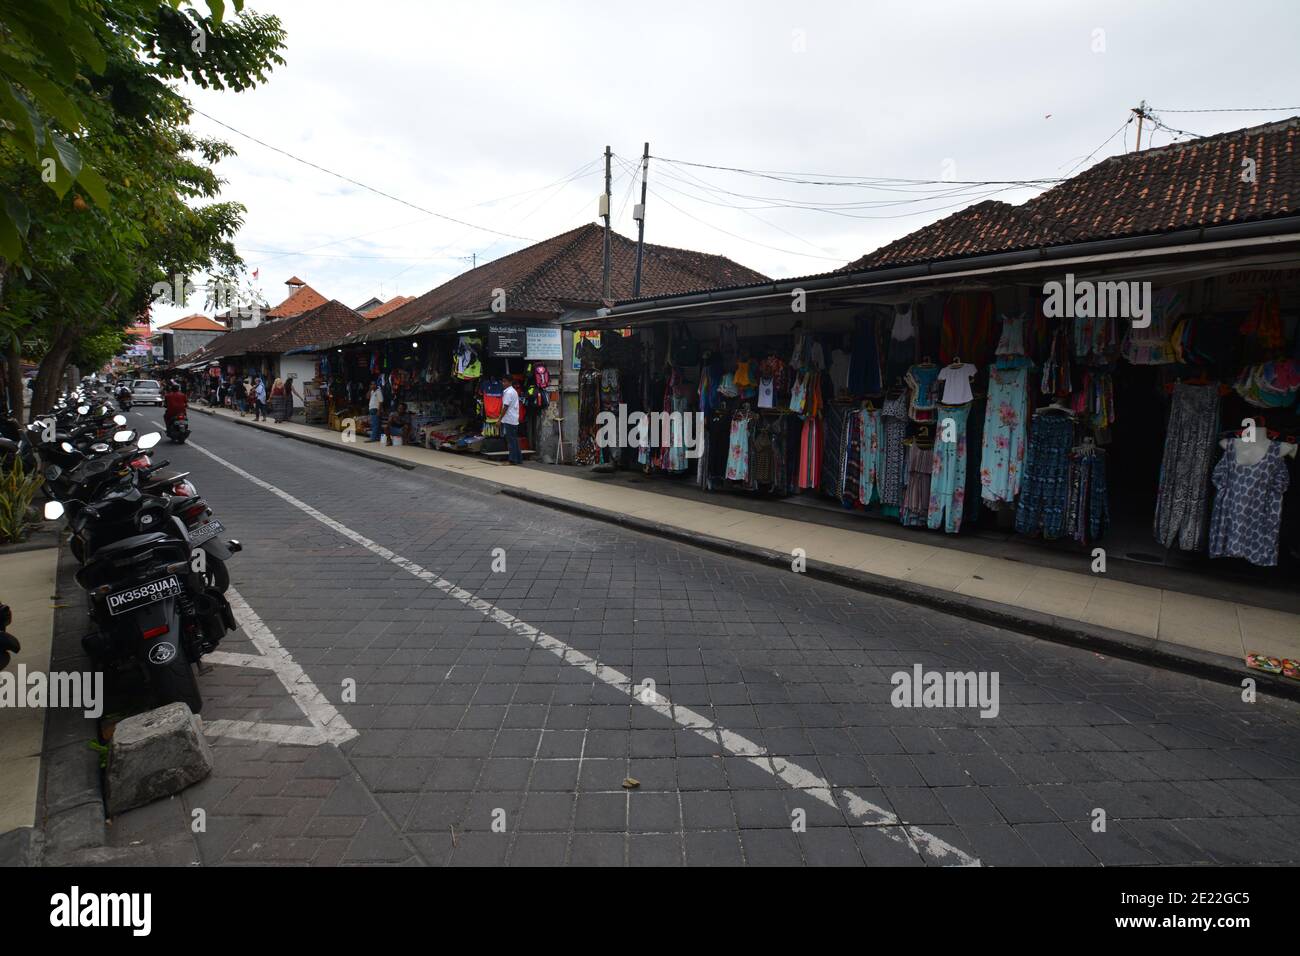 Bali, Indonesia - 12 gennaio 2021: Le strade della città di Kuta a Bali. Ristoranti e negozi vicino alle strade trafficate. Foto Stock